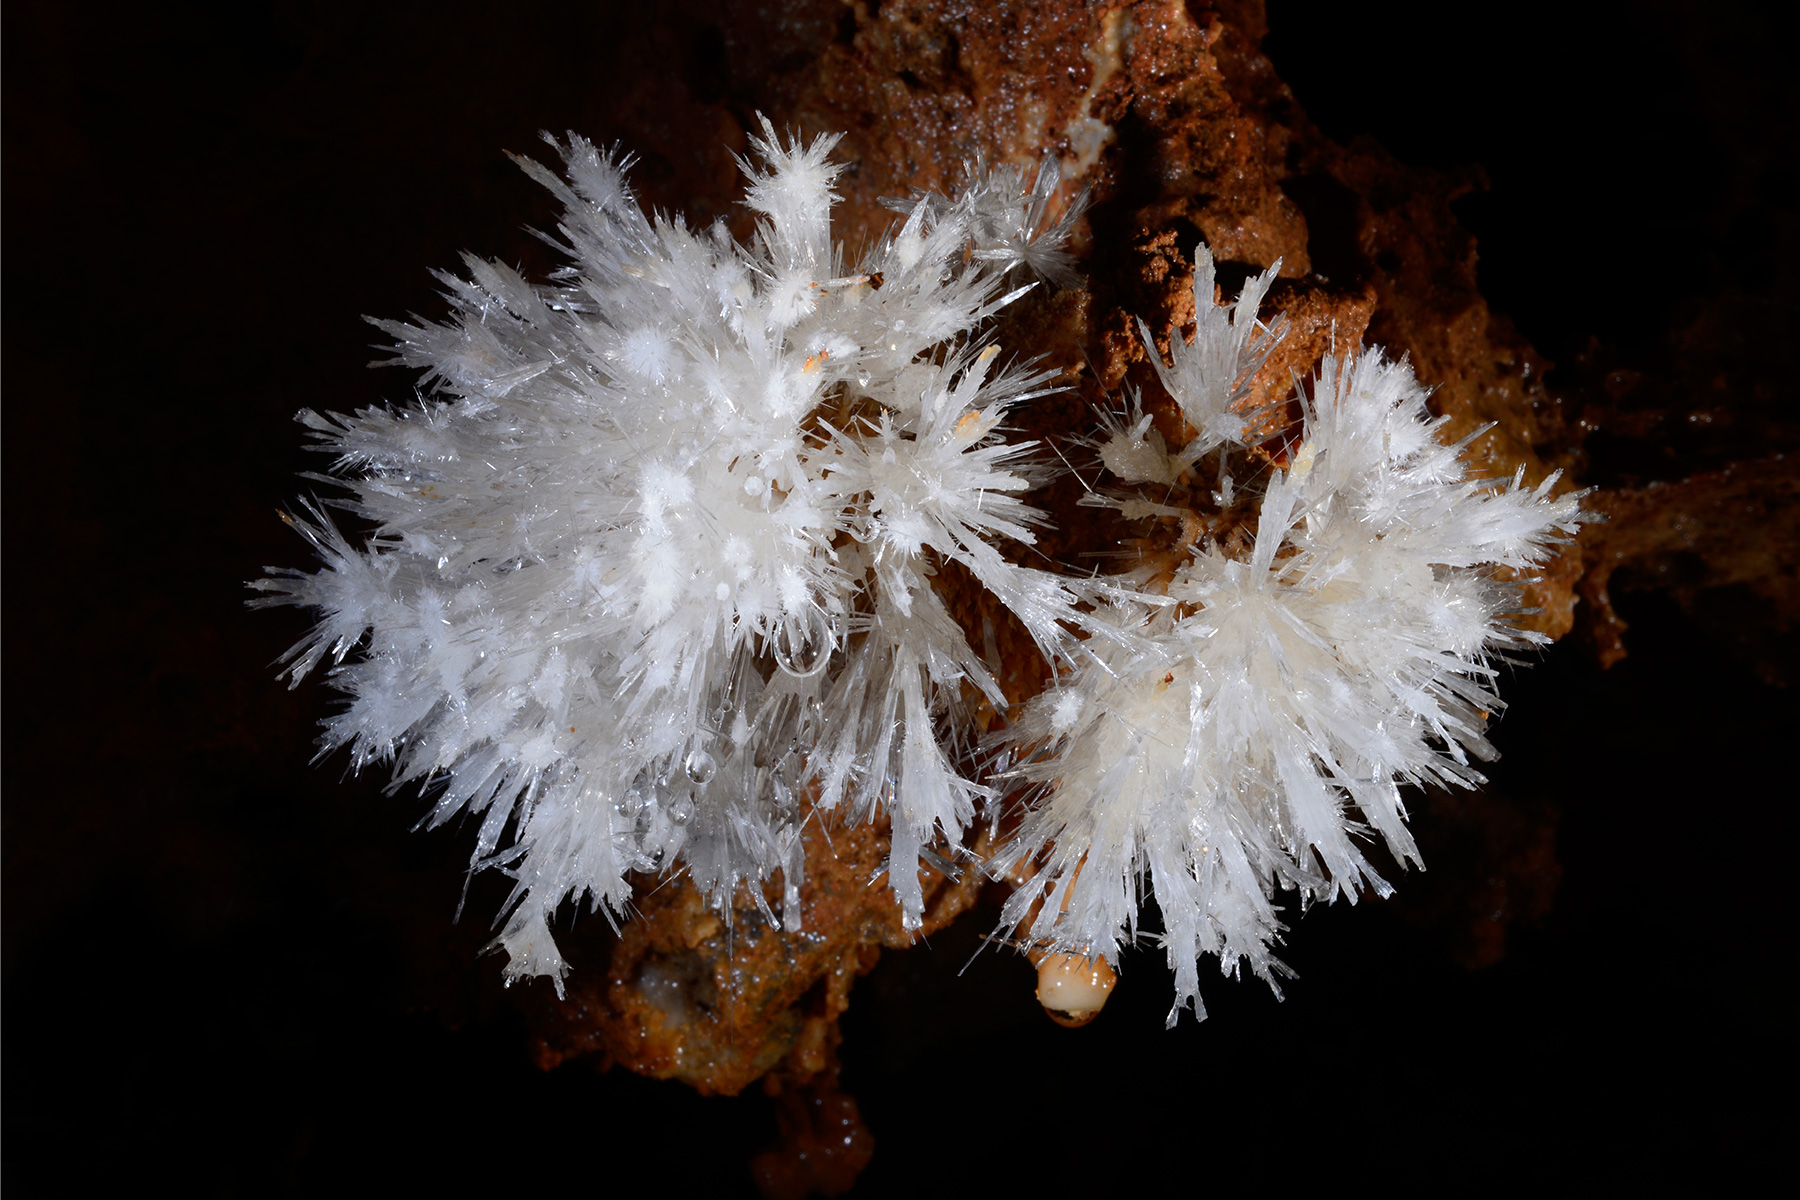 Grotte de Clamouse - Petits bouquets d'aiguilles d'aragonite sur une paroi argileuse